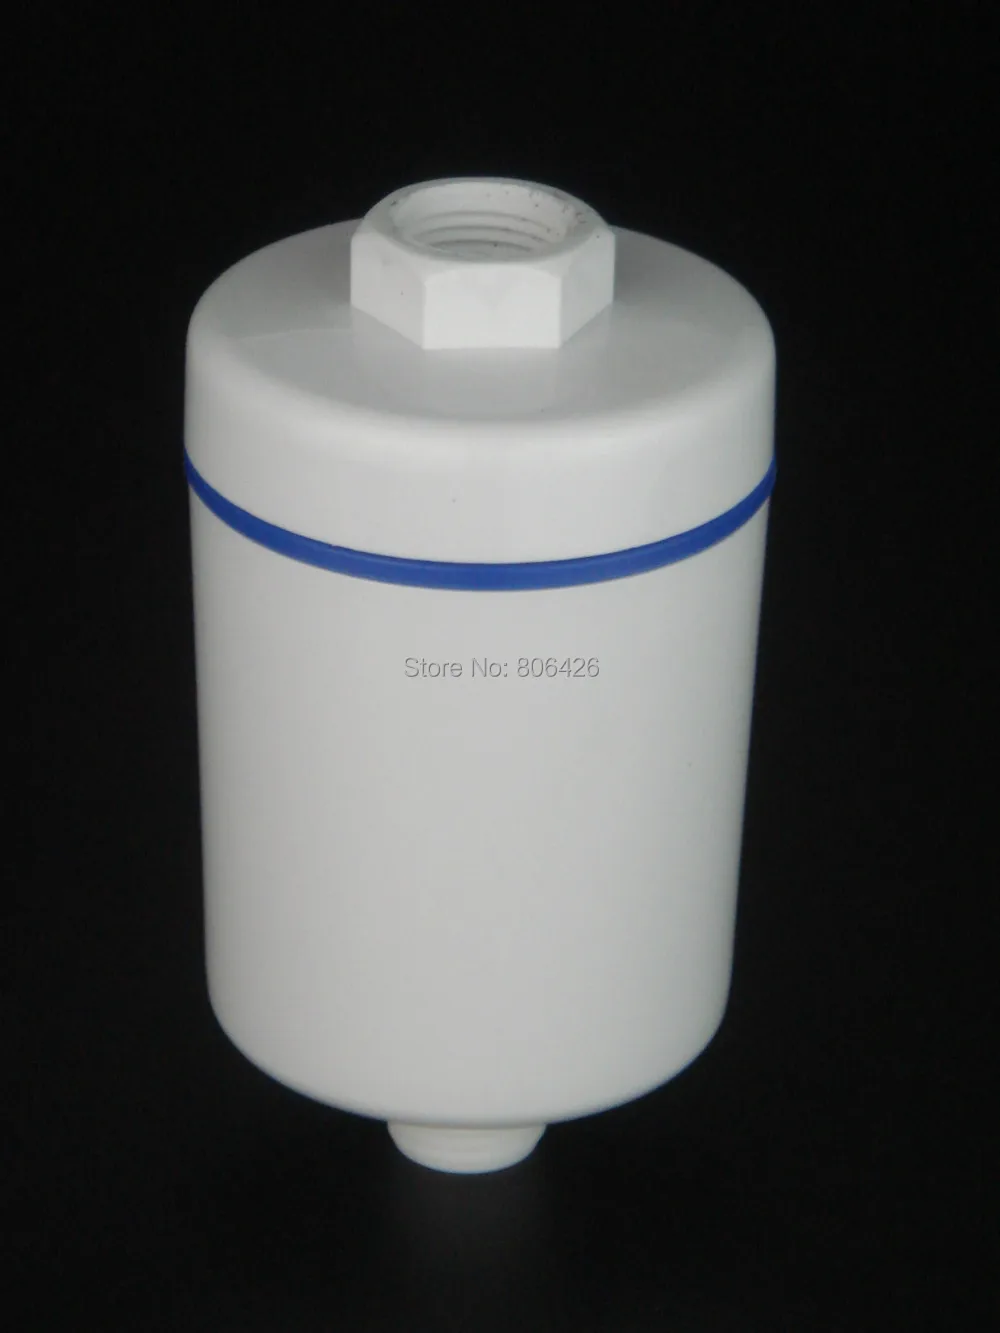 Klora tuš filter/kad tuš glavo/SPA filter/tuš SPA s kombinacijo Ogljikovih&KDF za odstranjevanje kemijskih in težkih kovin